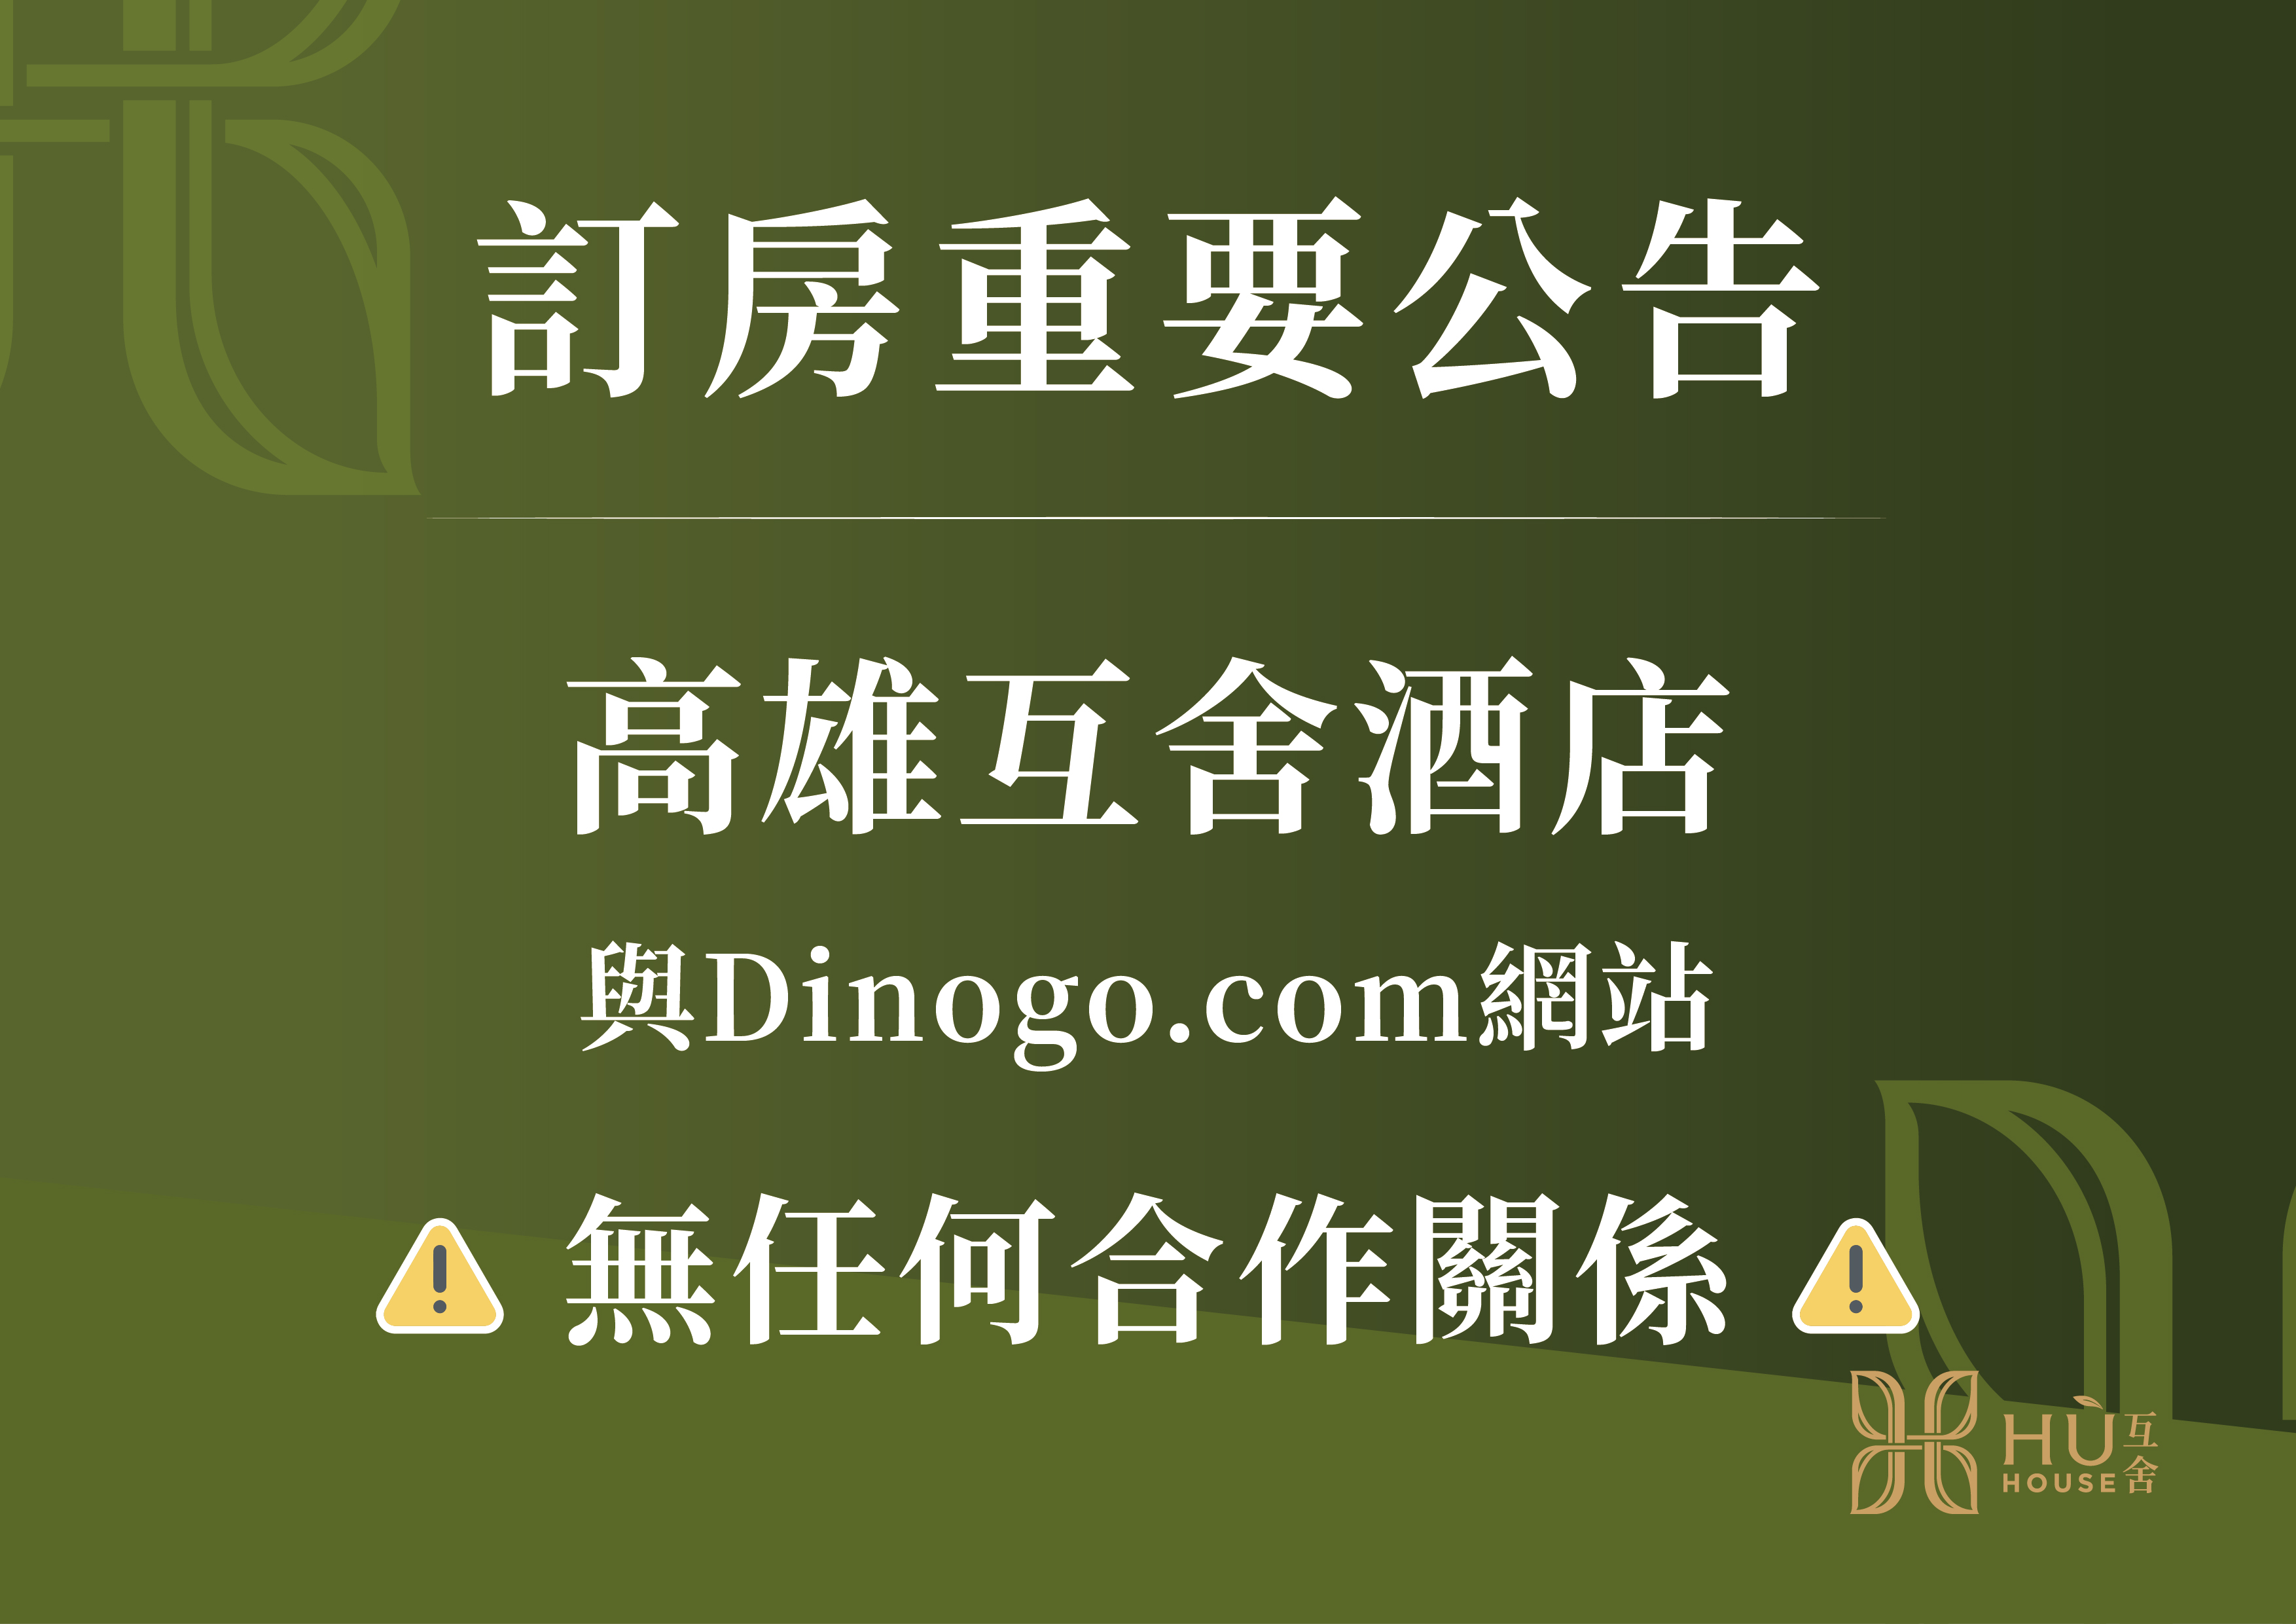 【重要公告】高雄互舍酒店與Dinogo.com 平台無合作聲明